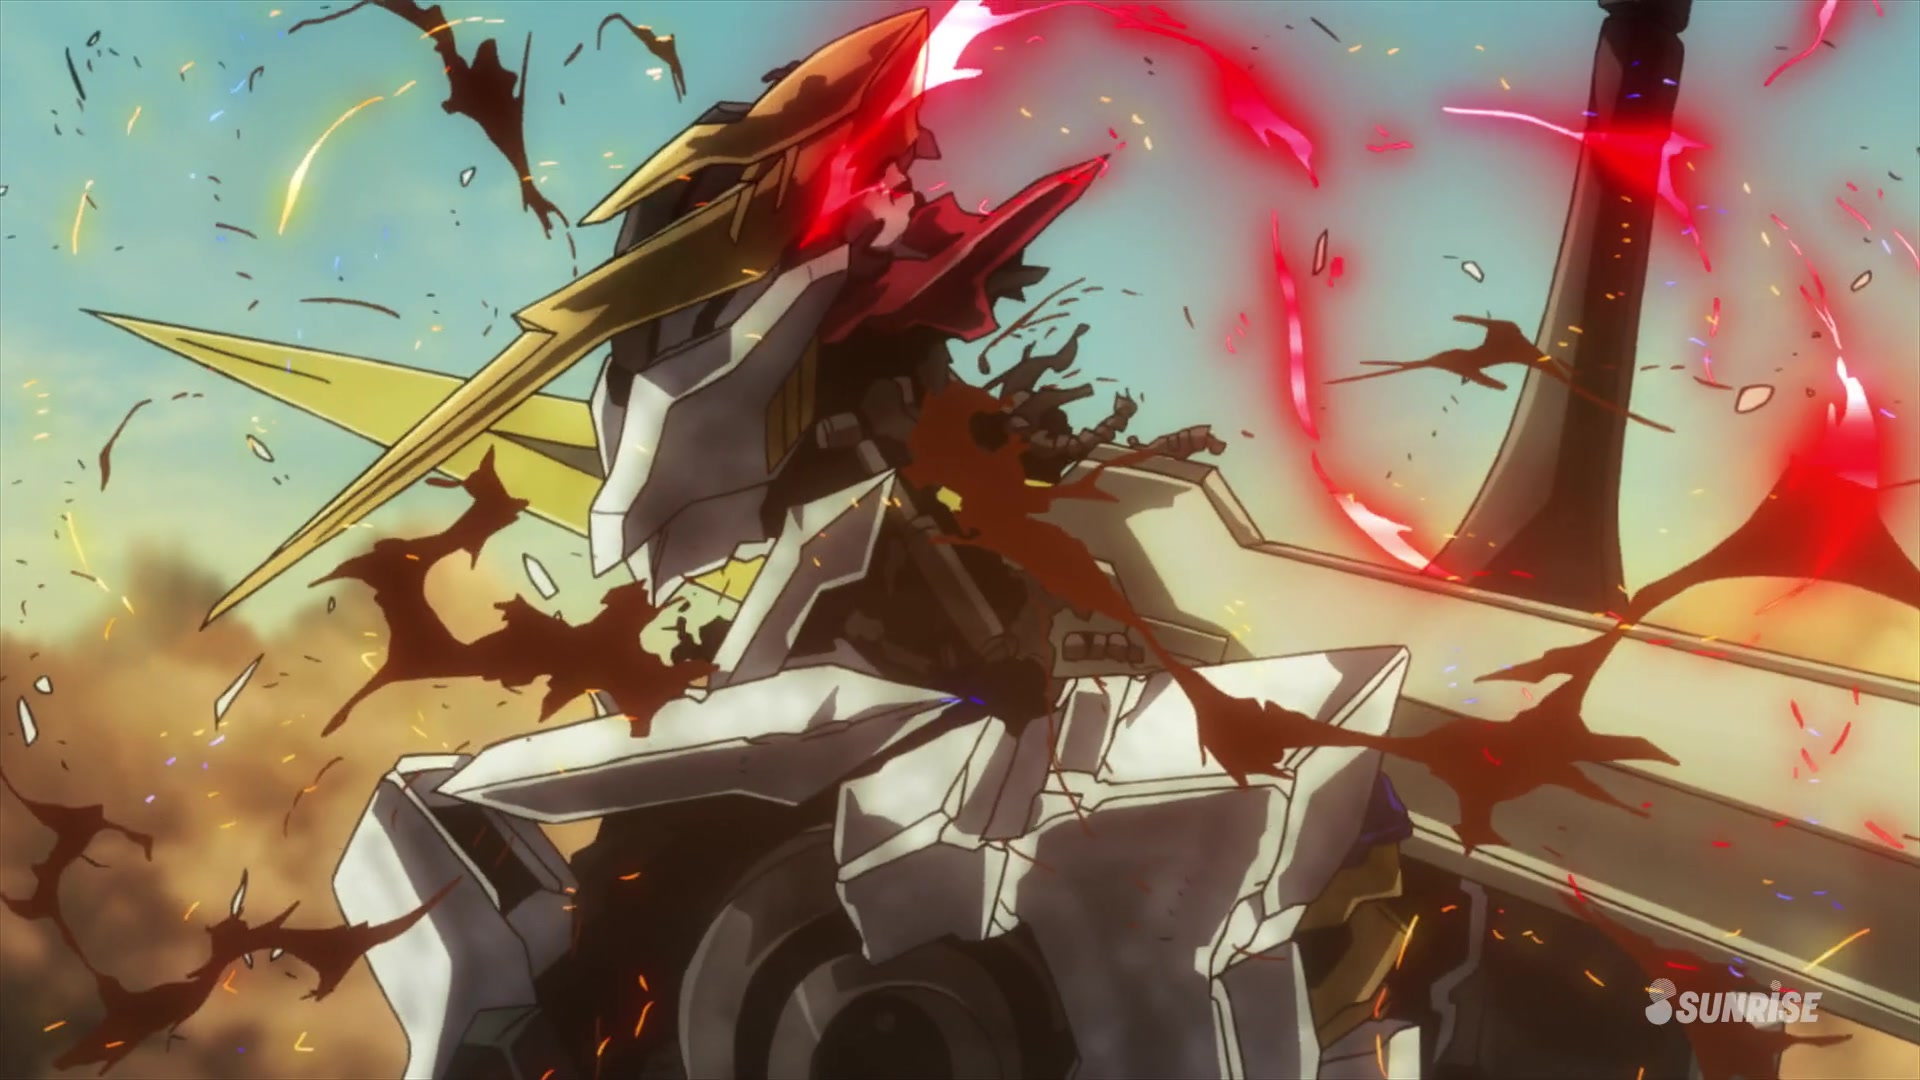 Манга месть железной кровной гончей меча 72. ГАНДАМ Железнокровные сироты. Gundam Barbatos Lupus Rex. Gundam Iron blooded Orphans.